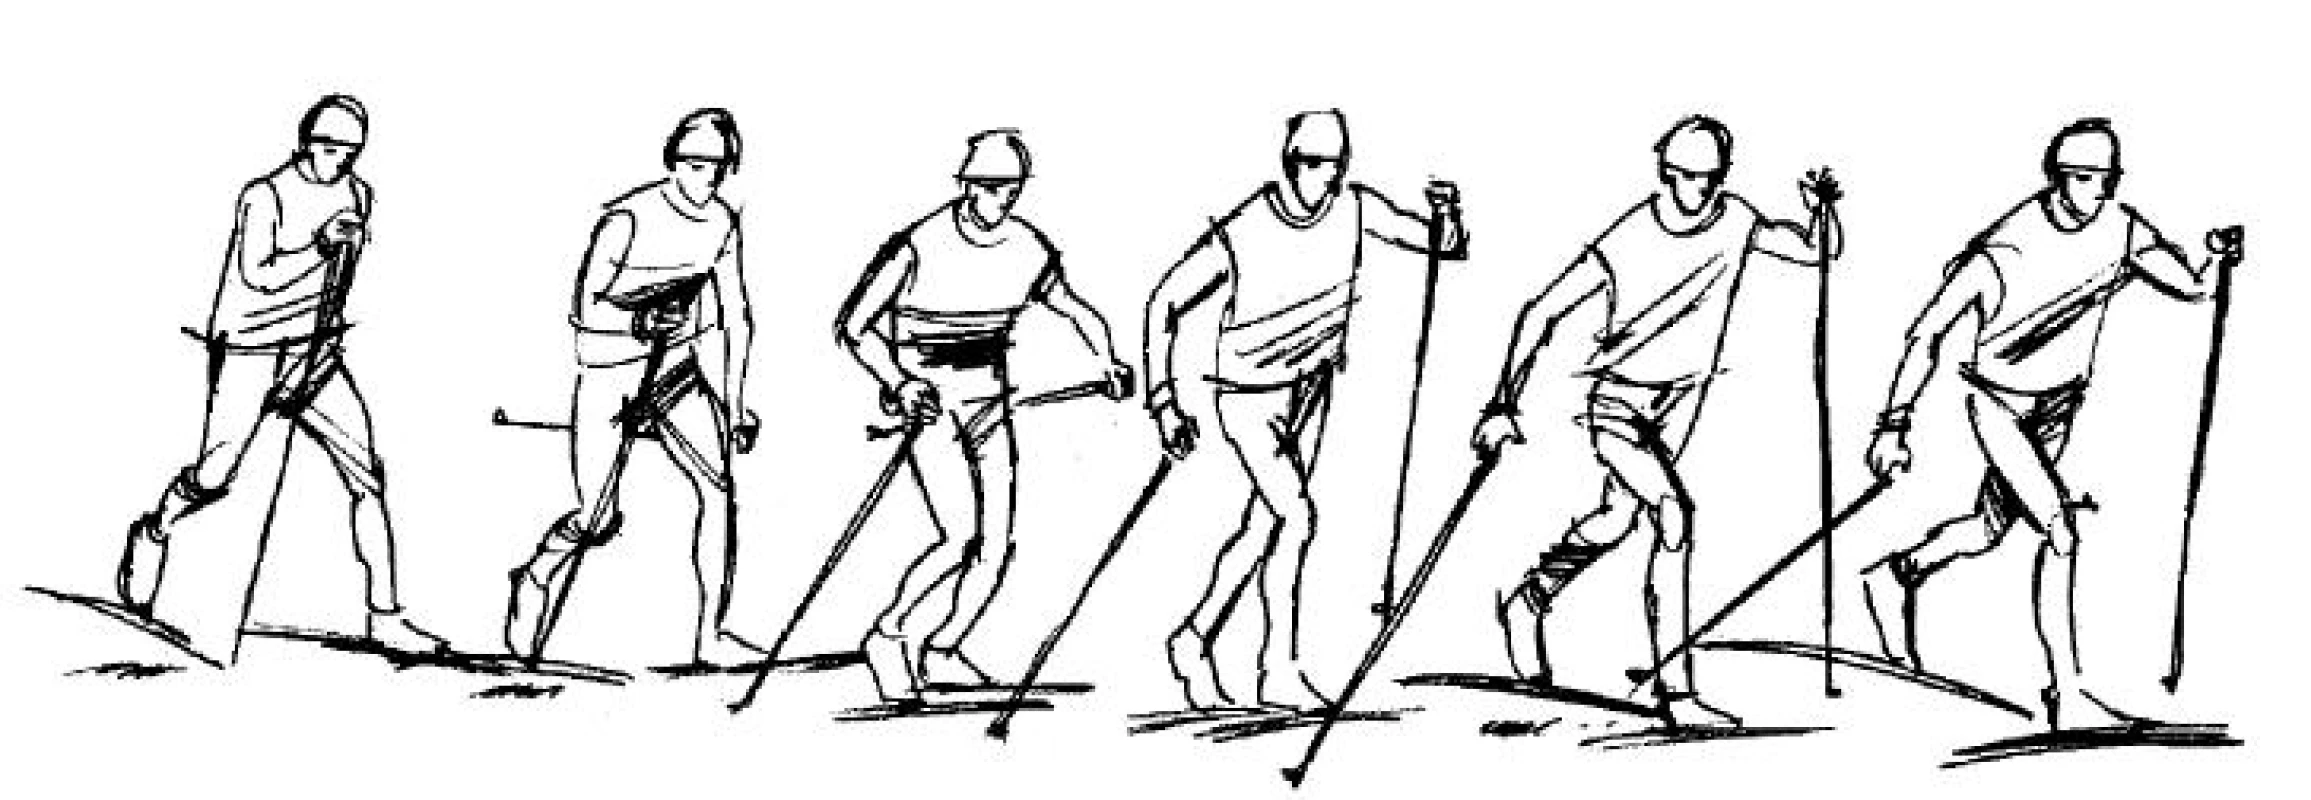 Průběh pohybu na lyžích při střídavém dvoudobém běhu klasickou technikou.